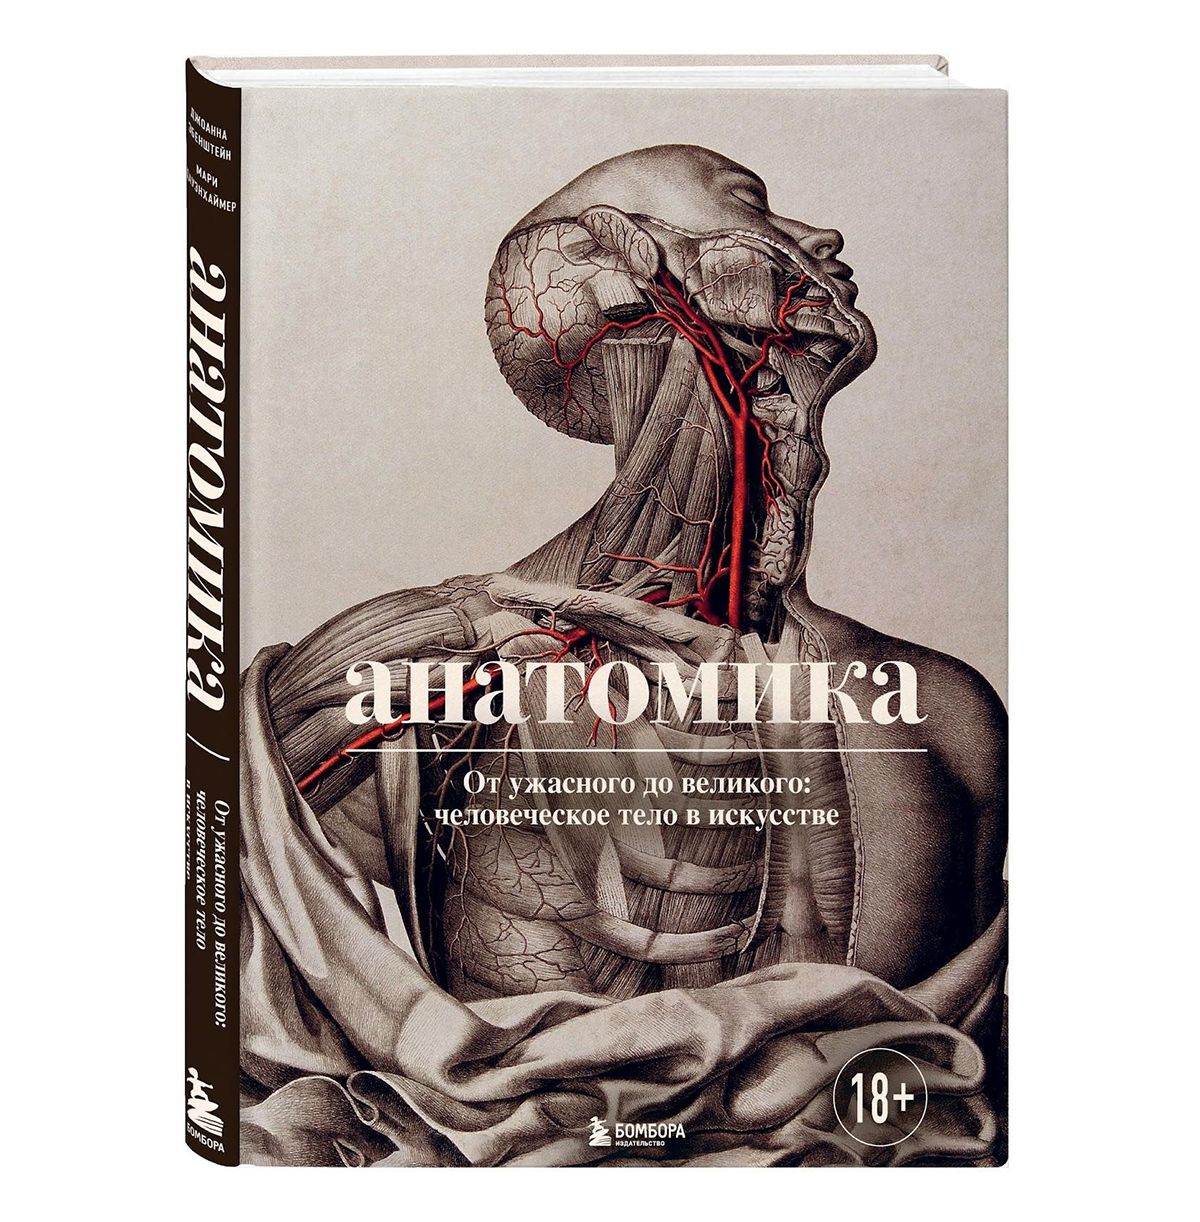 Анатомика. От ужасного до великого: человеческое тело в искусстве. Издательство Bombora, фото 1